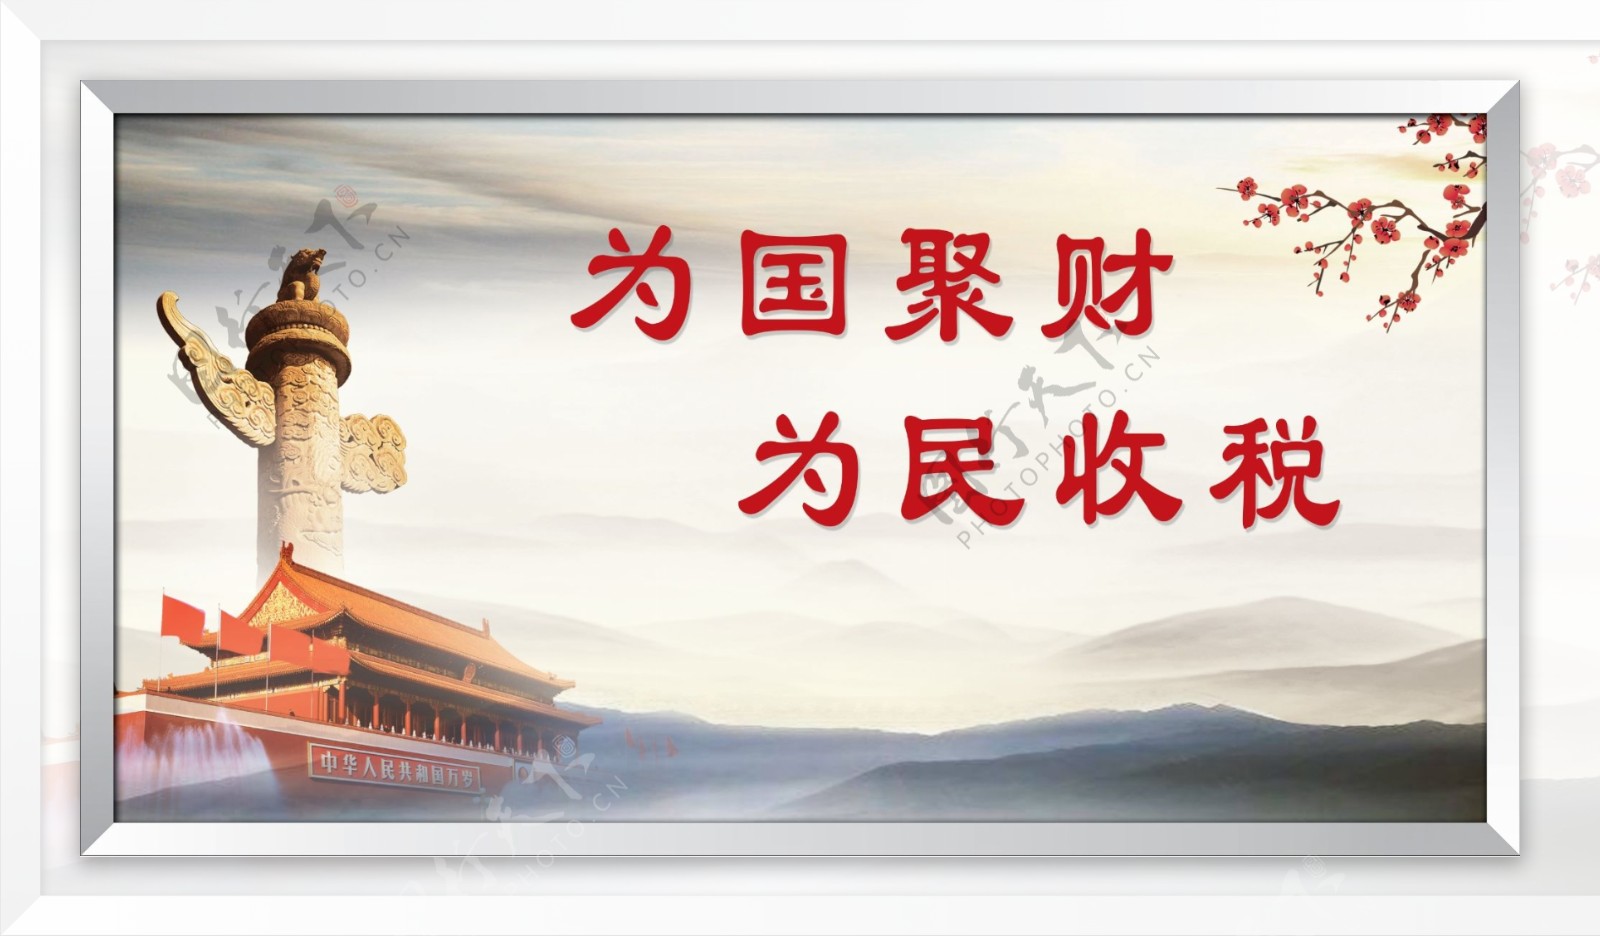 国税文明用语文明单位爱国中国风中国梦标语